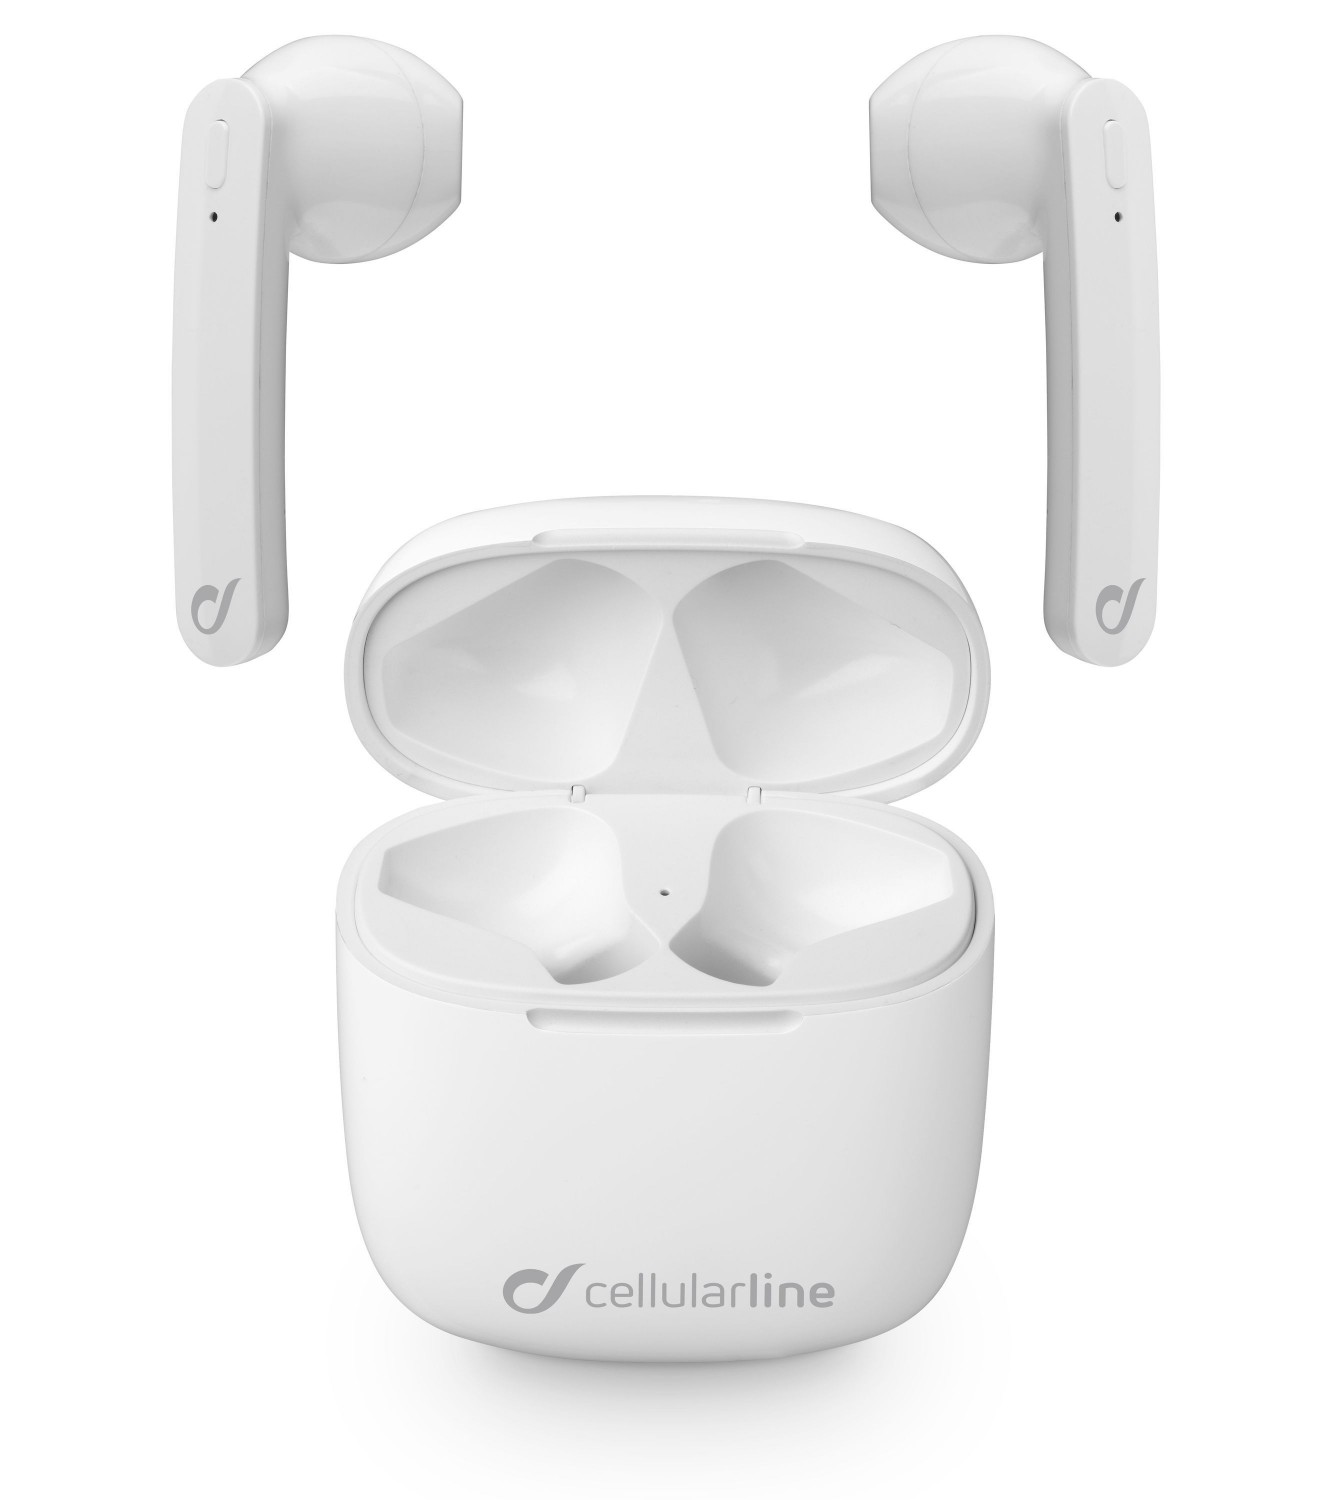 True wireless sluchátka Cellularline Aries s dobíjecím pouzdrem, Double master technologie, bílá